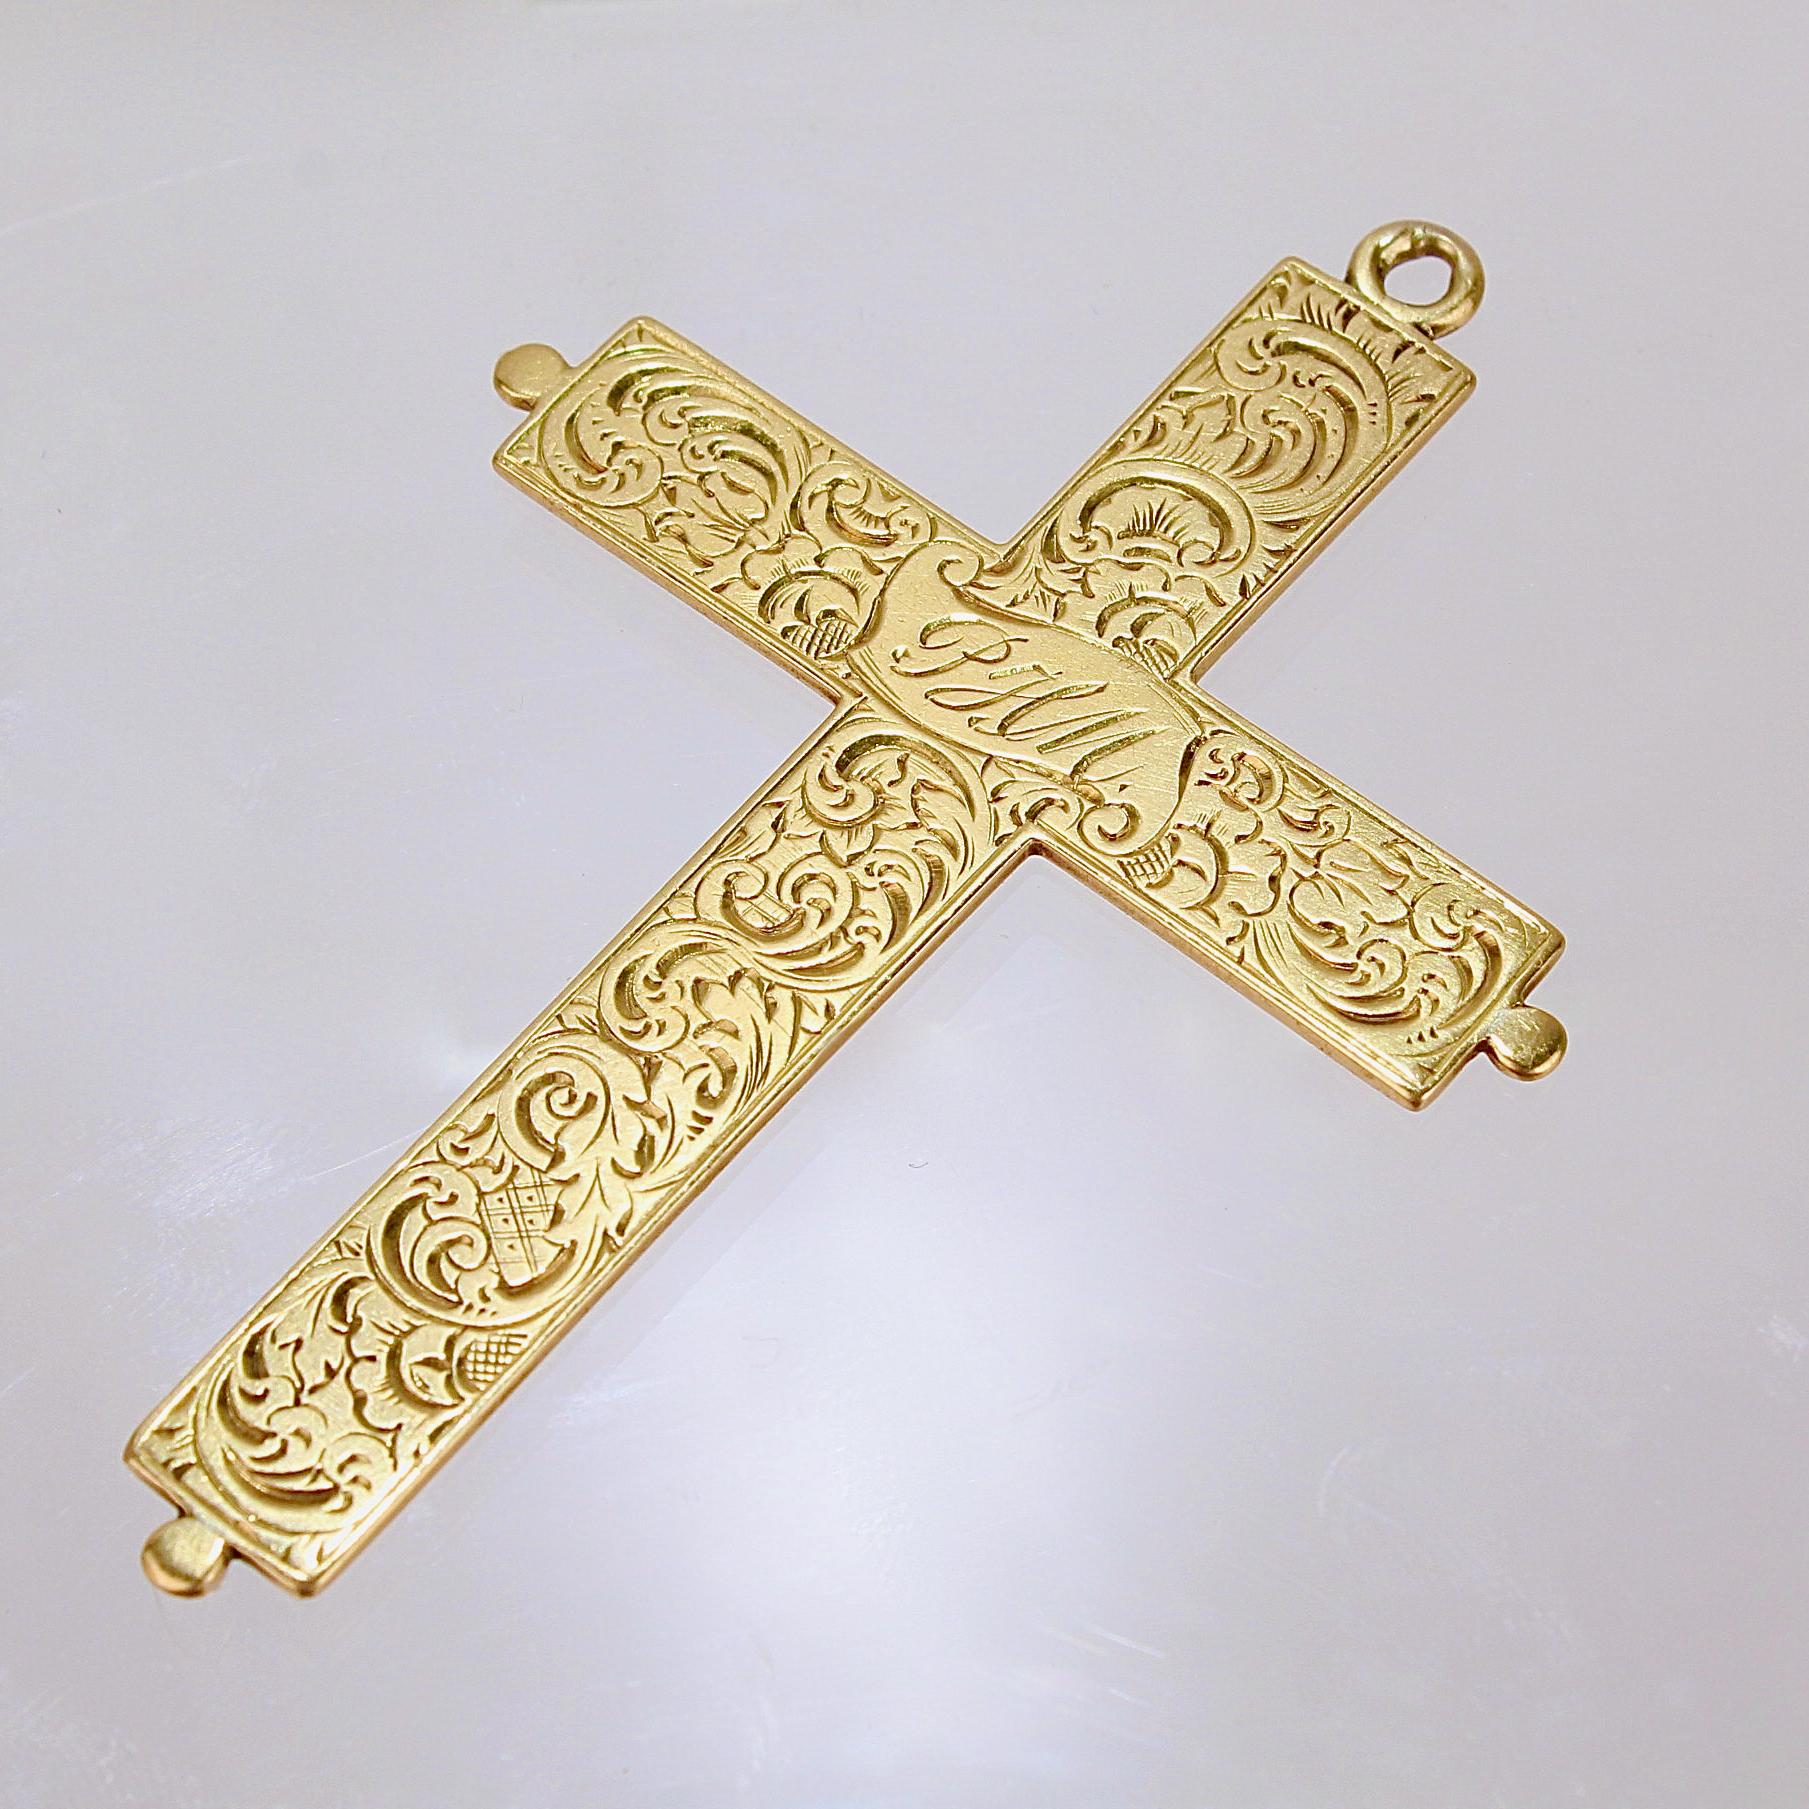 Très beau crucifix ancien ou croix suspendue.

En or jaune 14k, avec gravure décorative à l'avant et à l'arrière. 

Le centre de chaque côté du pendentif est gravé des initiales (PHM et EJM).

Date :
XXe siècle

État général :
Il est en bon état